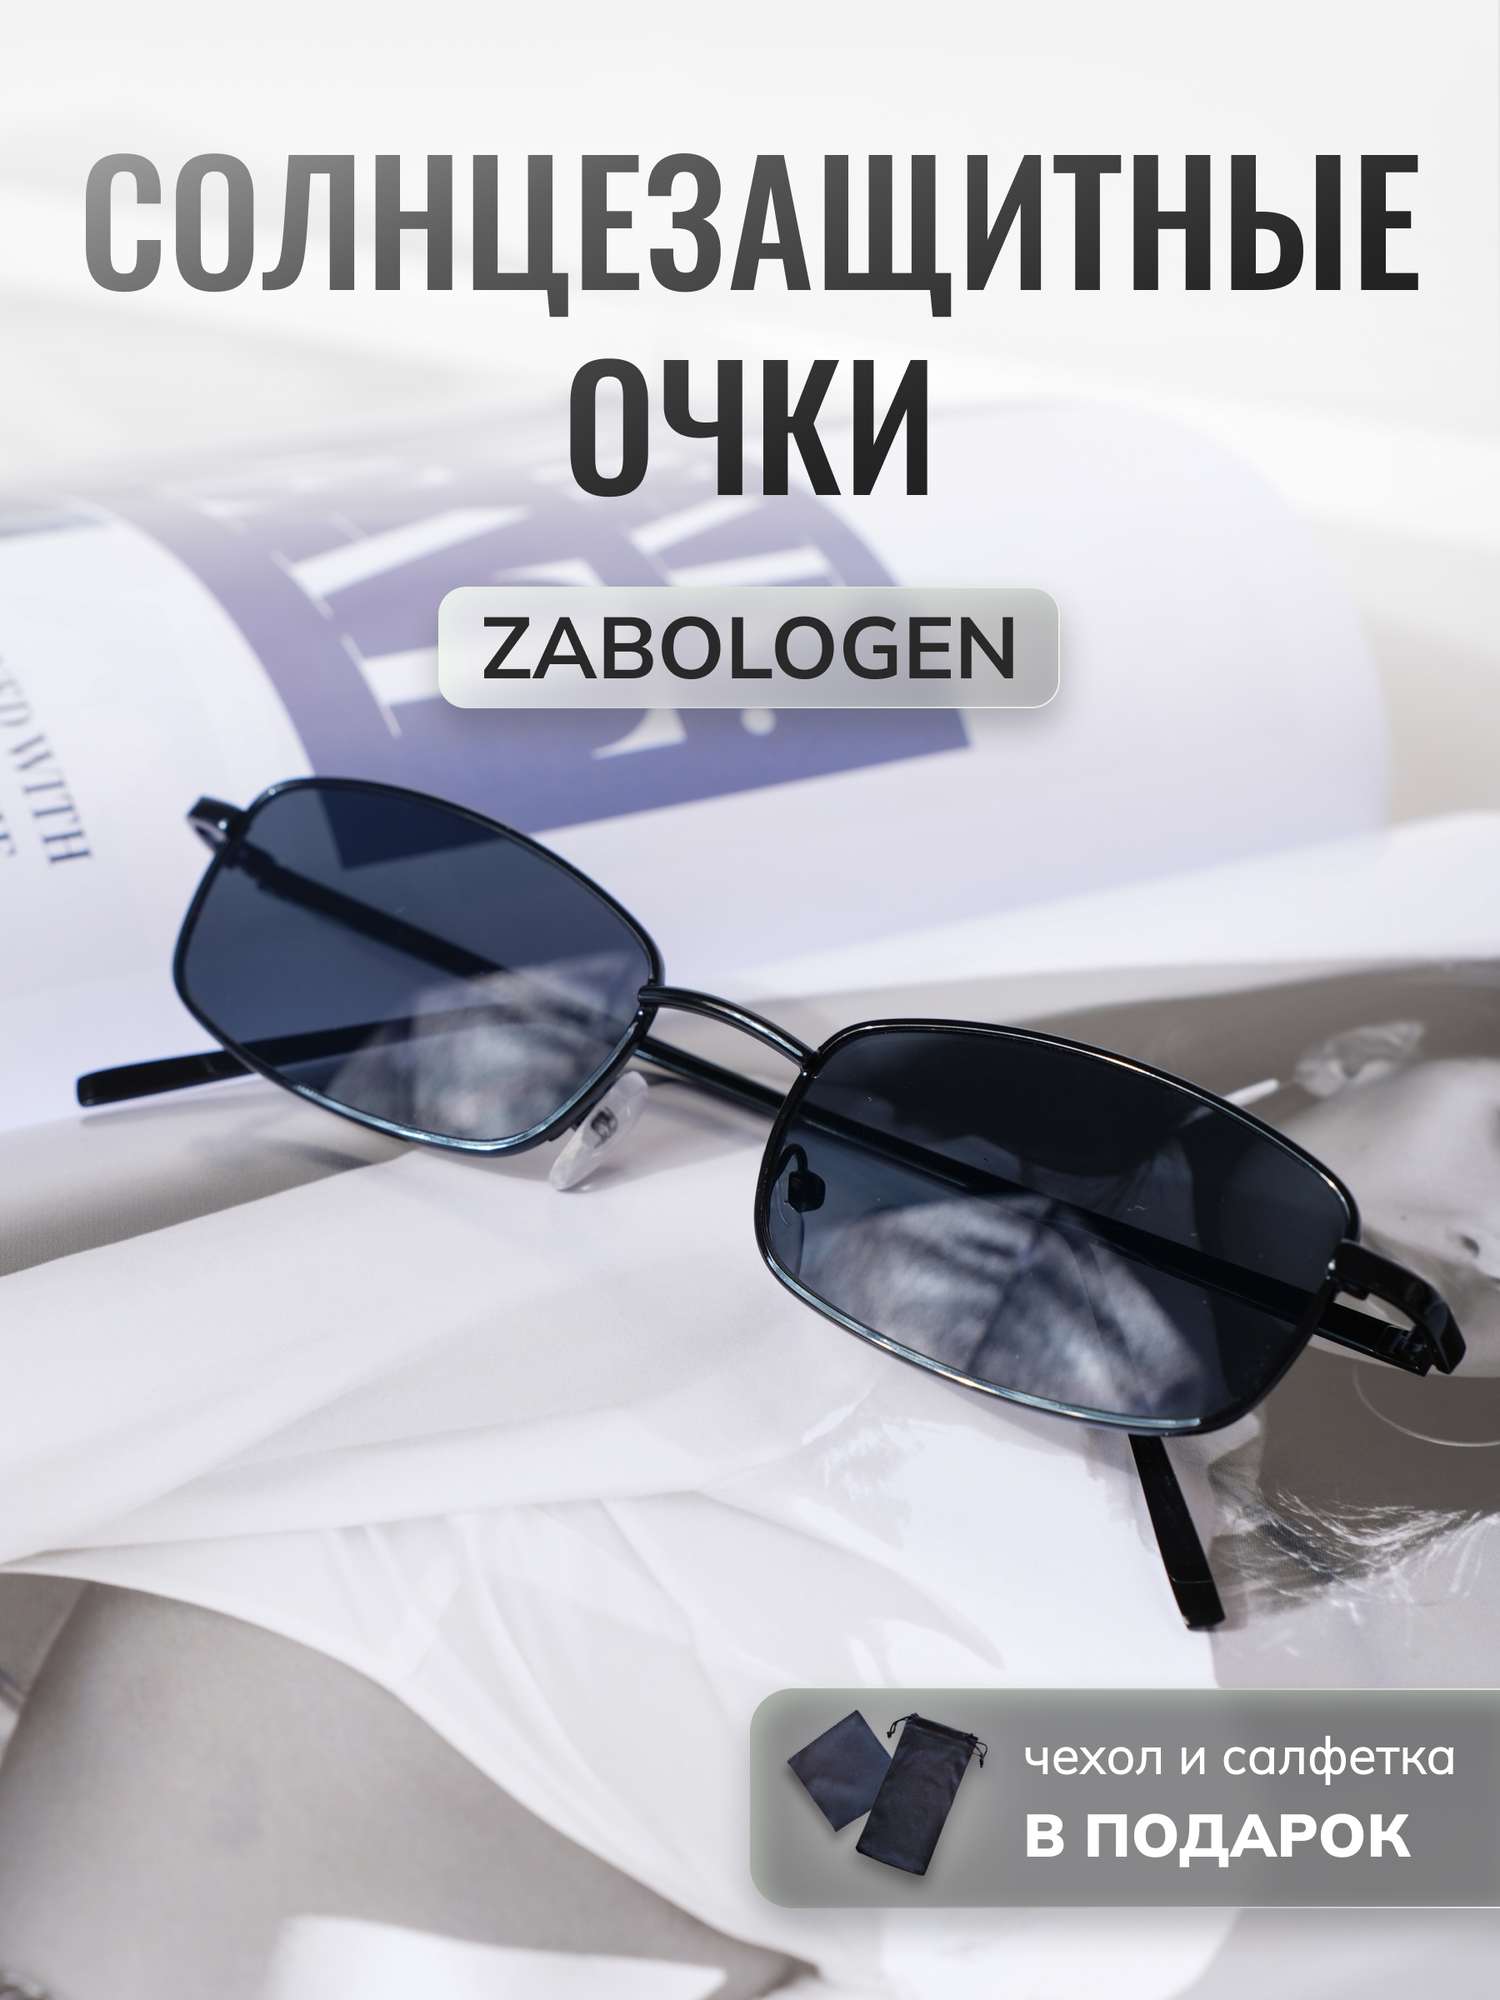 Солнцезащитные очки Zabologen